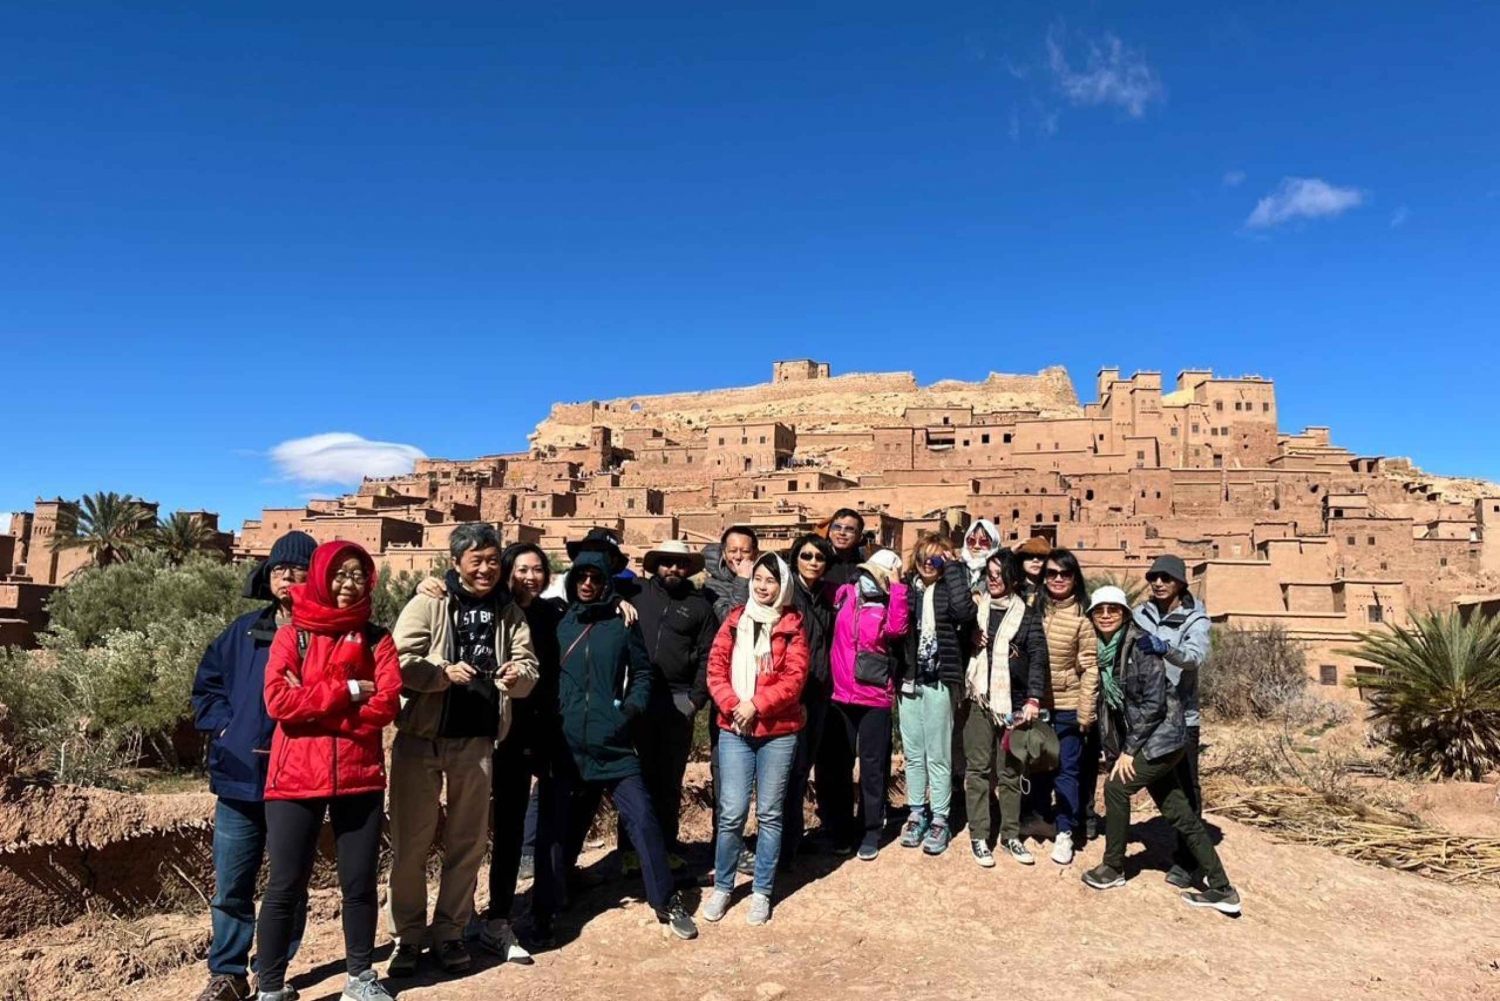 Z Marrakeszu: Merzouga 3-dniowa wycieczka na pustynię z luksusowym obozem